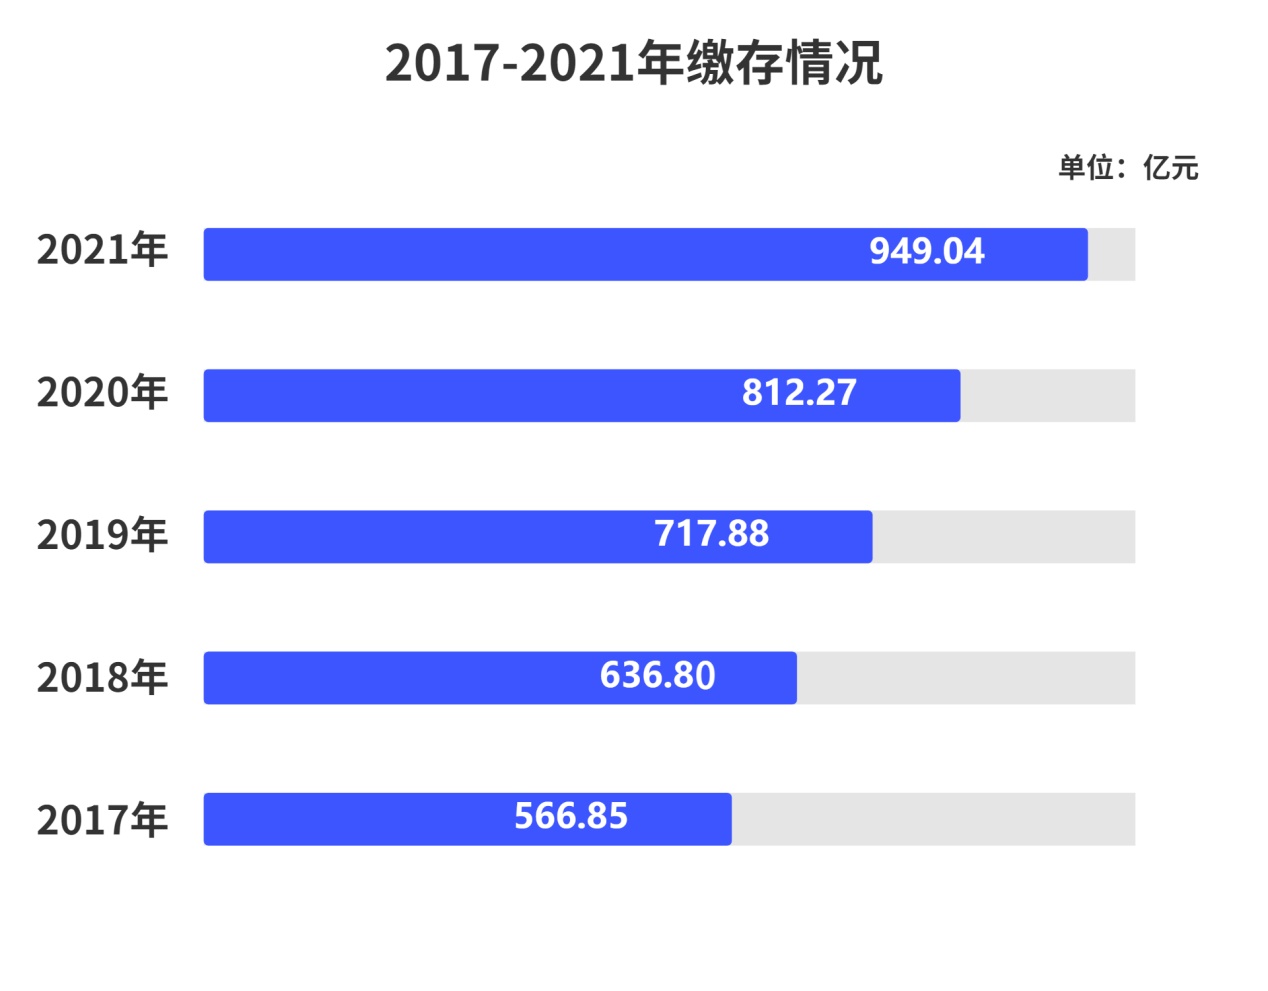 深圳住房公积金2021年年报出炉 全年缴存额949.04亿元